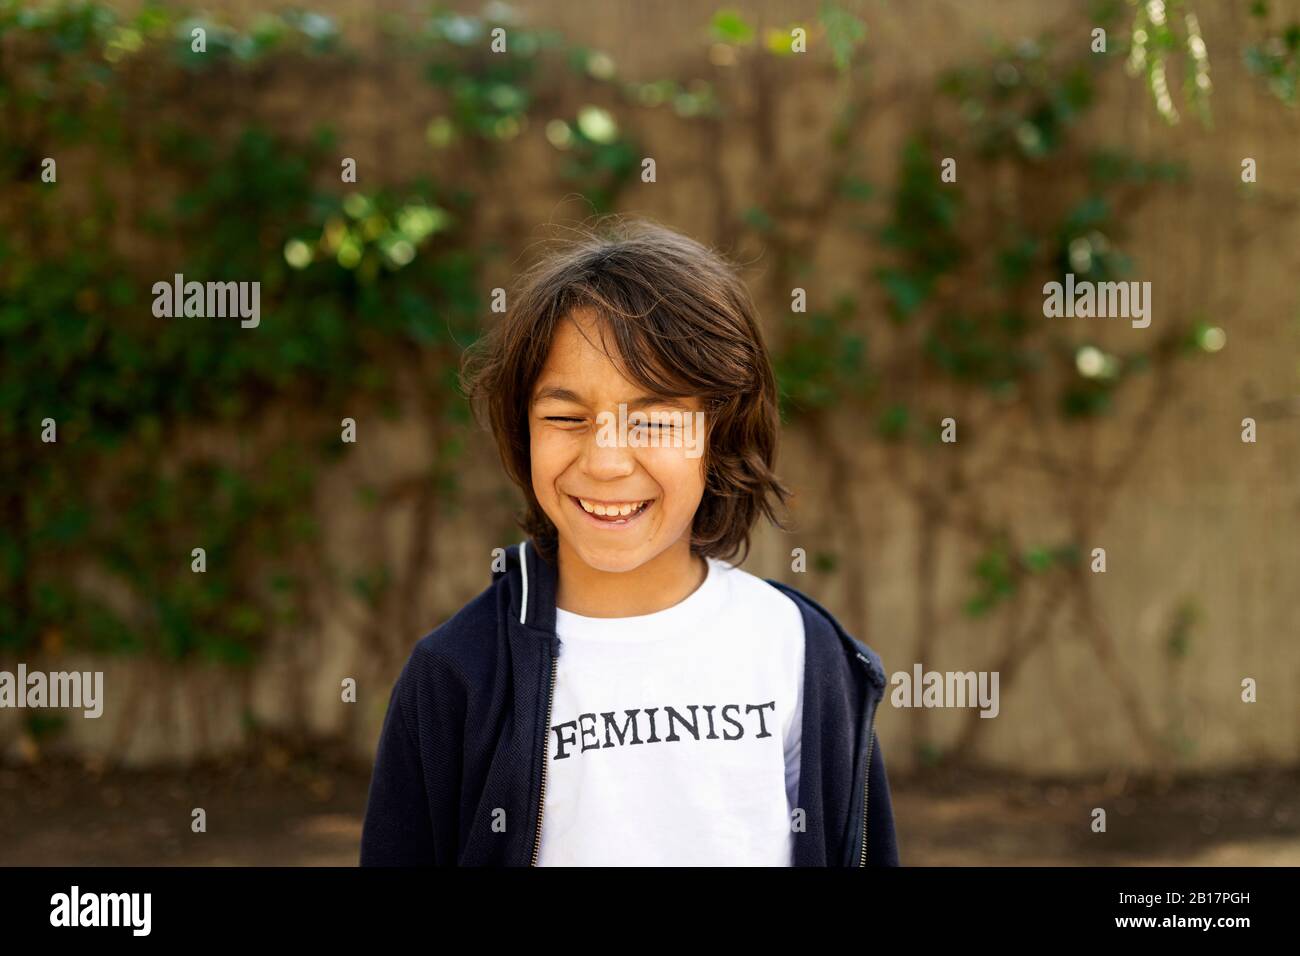 Lachender Junge, der auf der Straße mit Aufdruck auf dem T-Shirt steht und feministisch sagt Stockfoto